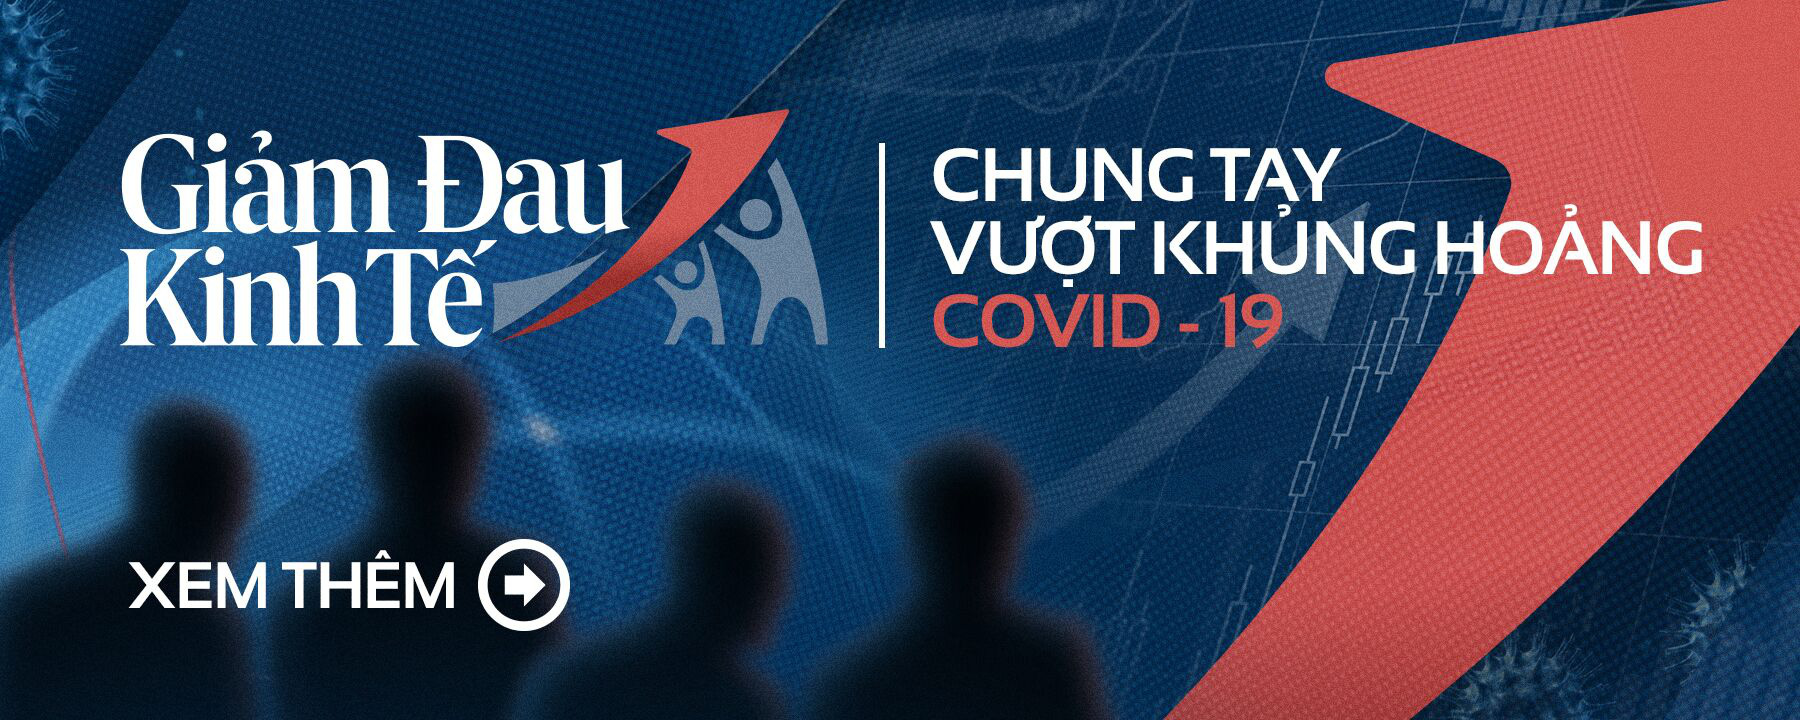 Ông Trương Gia Bình: Là quốc gia chống dịch Covid-19 tốt nhất, Việt Nam có cơ hội trở thành đội quân hậu cần cho cả thị trường thế giới! - Ảnh 1.